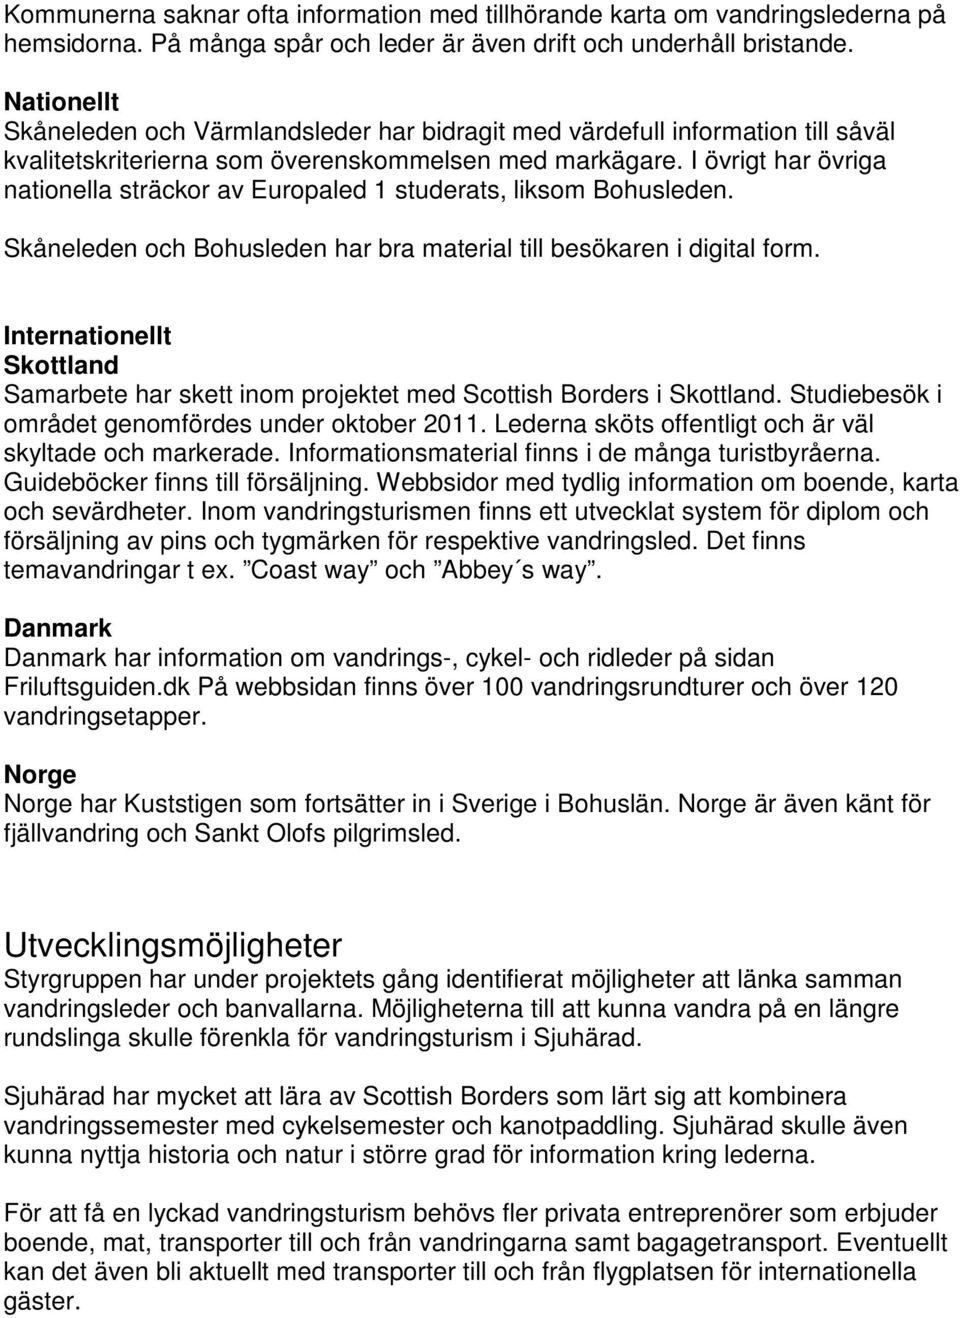 I övrigt har övriga nationella sträckor av Europaled 1 studerats, liksom Bohusleden. Skåneleden och Bohusleden har bra material till besökaren i digital form.